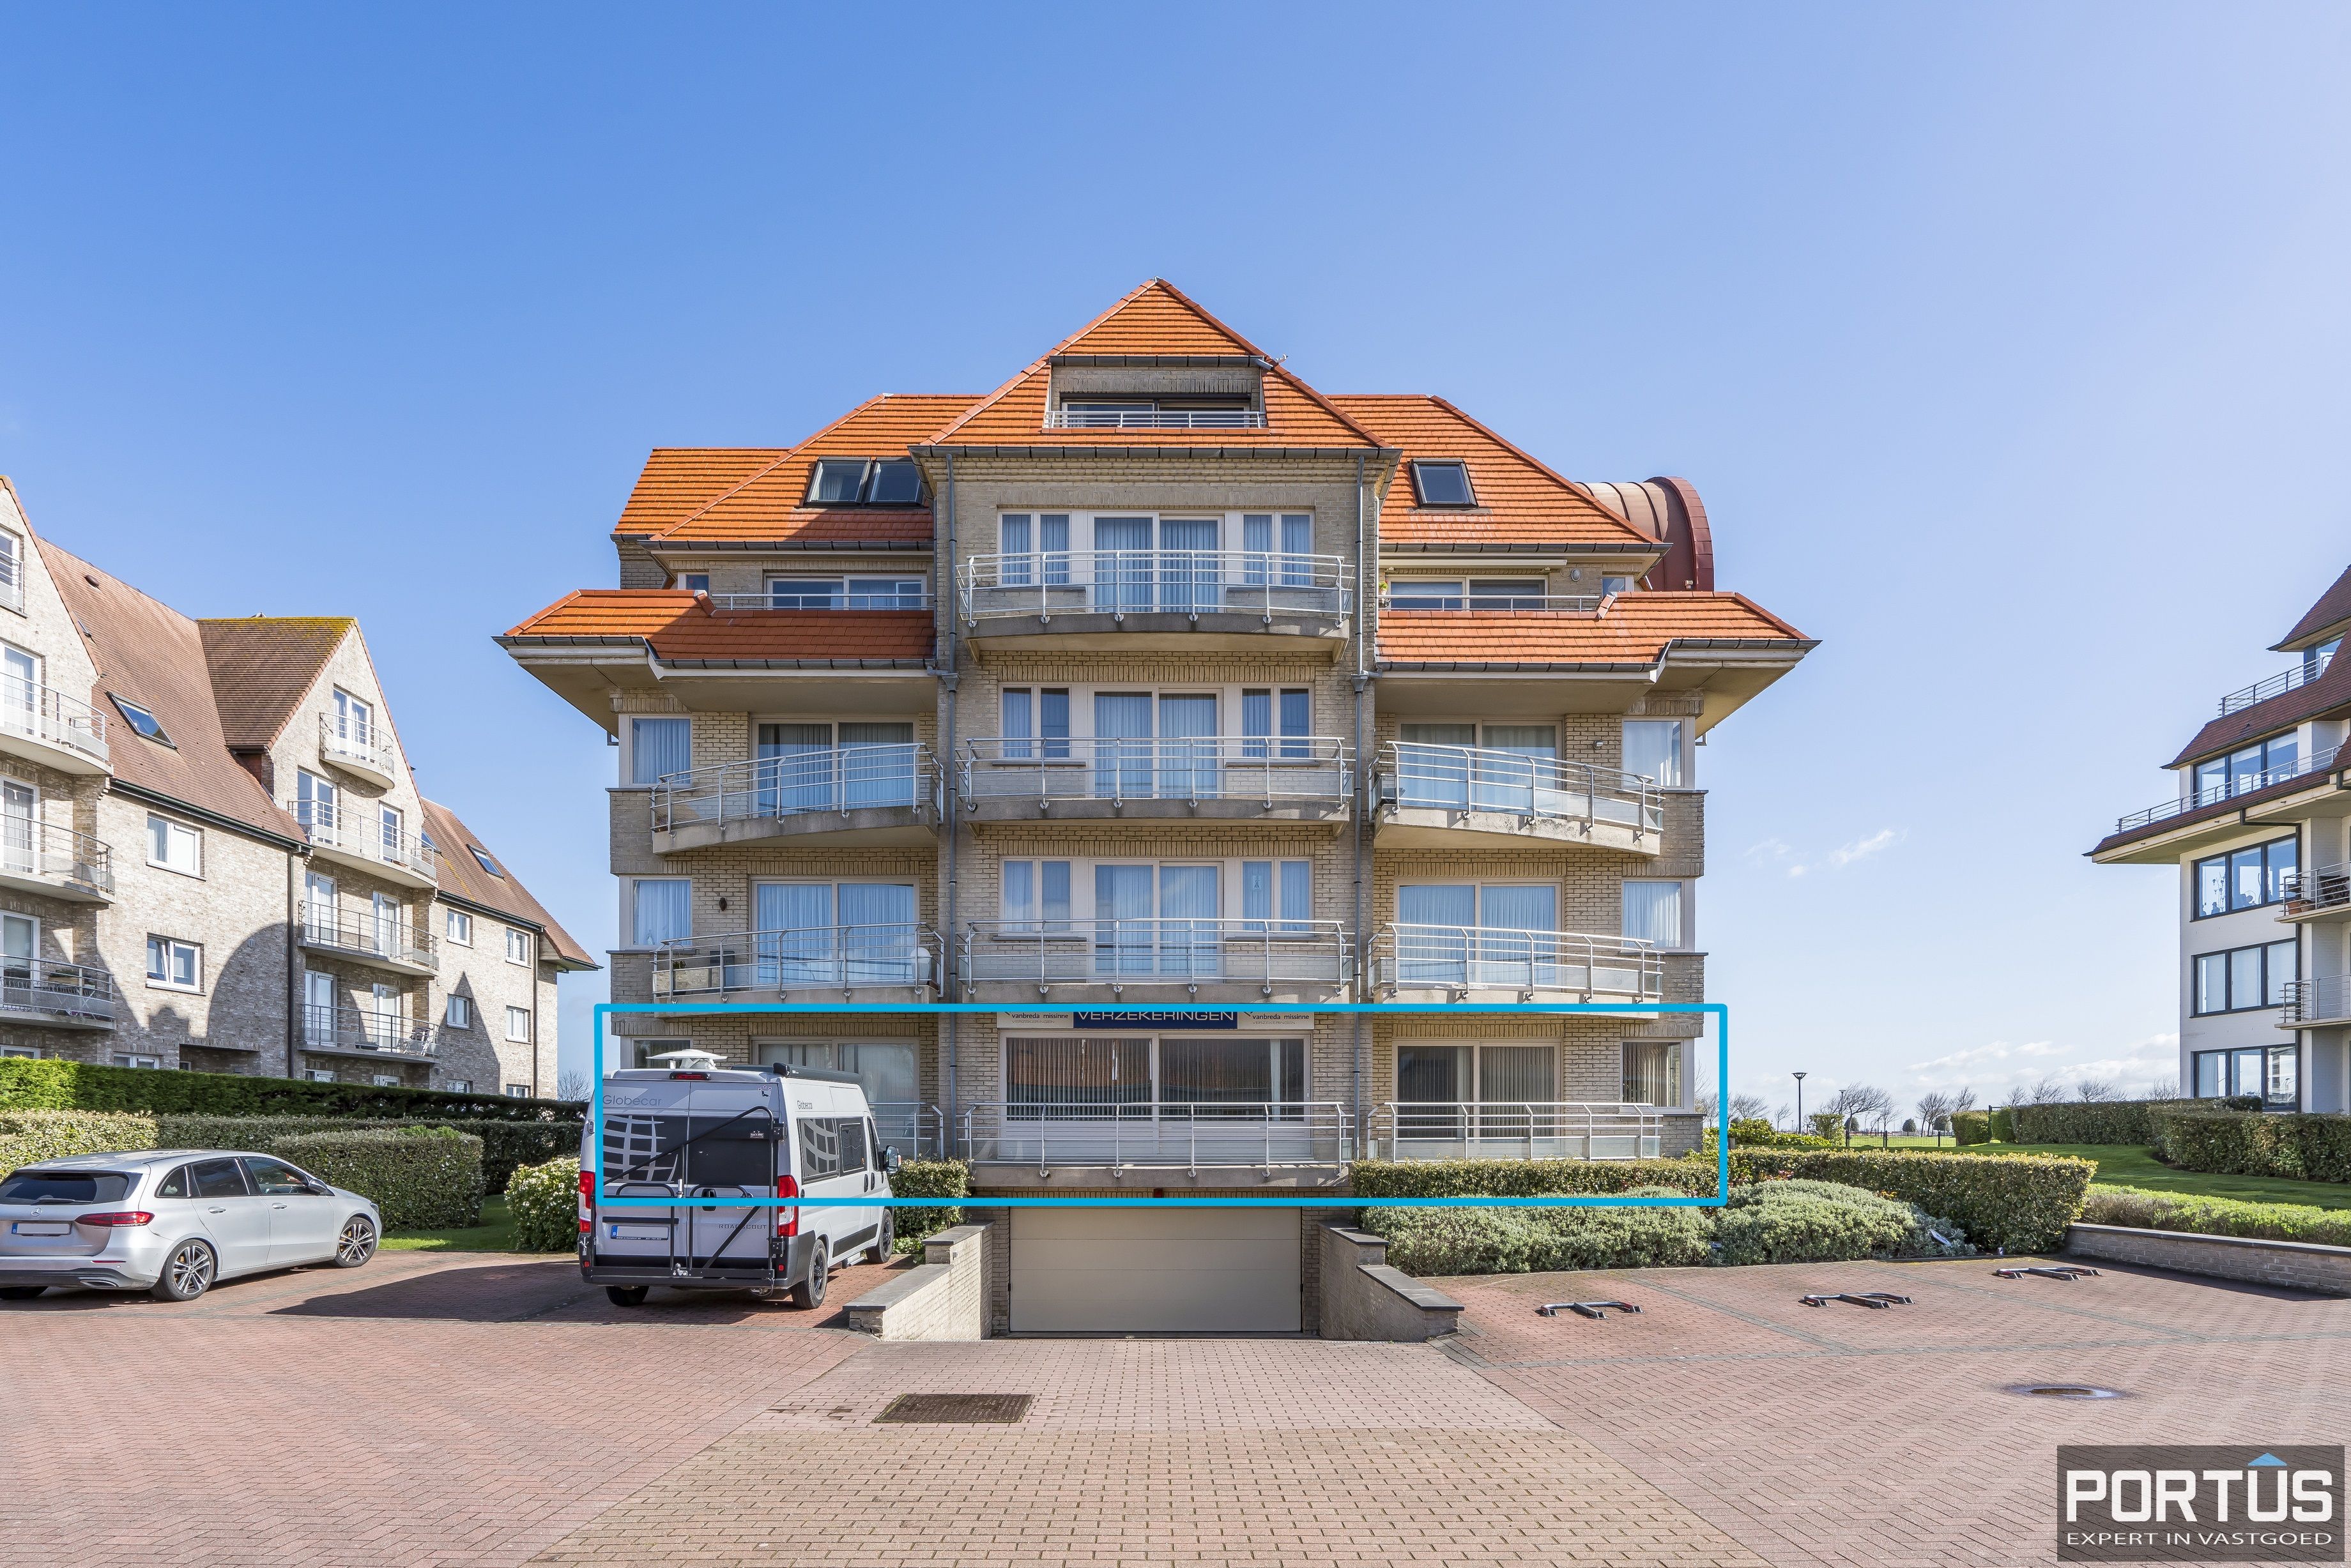 Appartement/Handelsgelijkvloers met terras te koop te Nieuwpoort - 16818